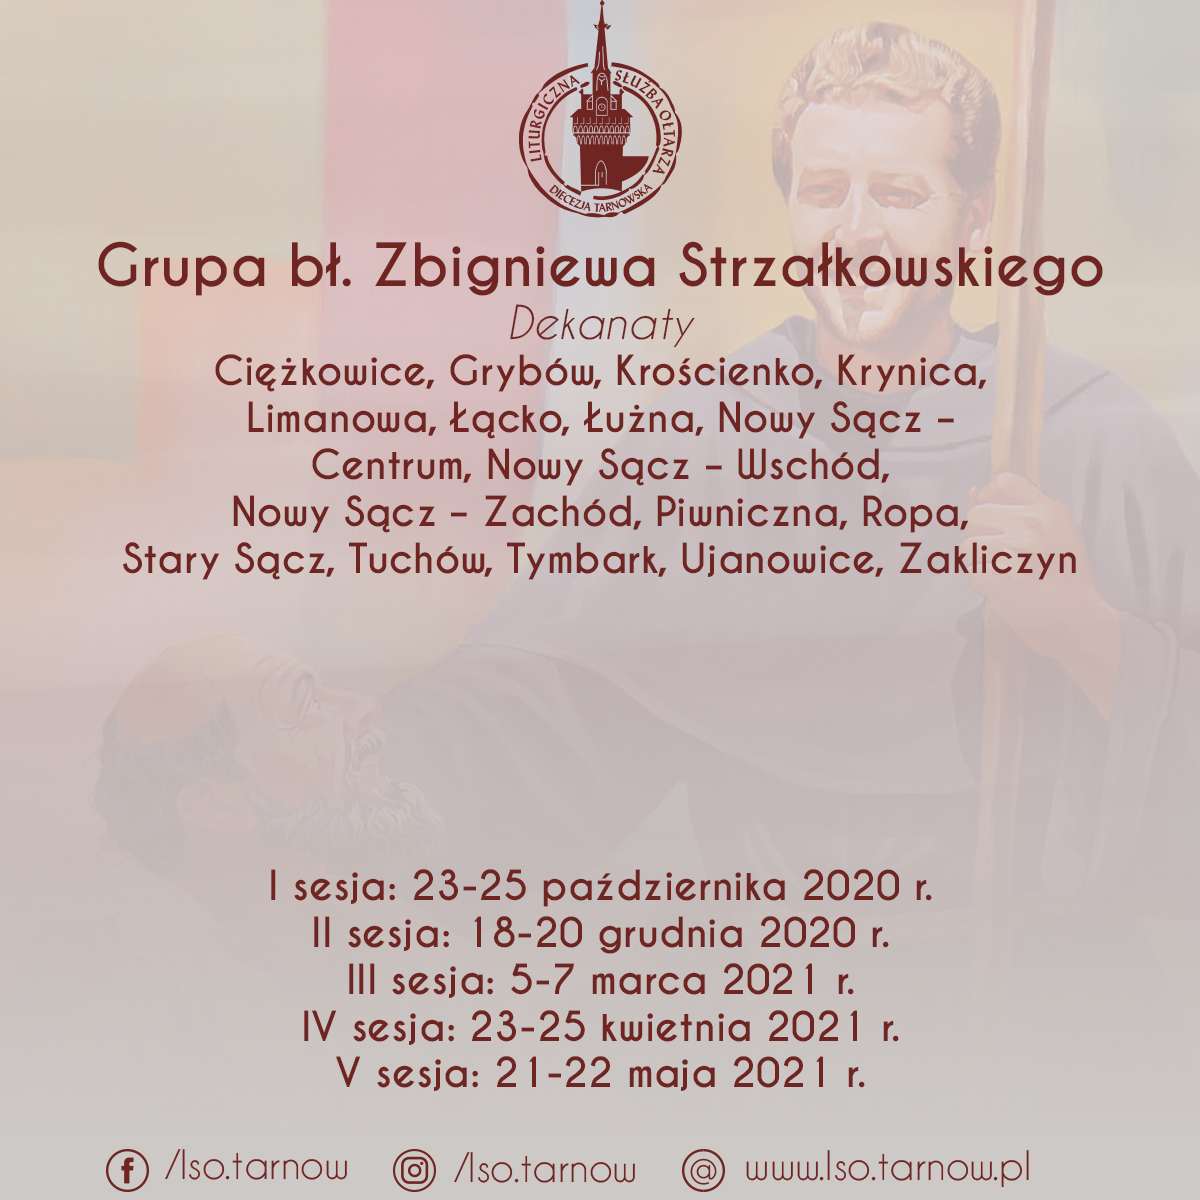 Podzial dekanaty grupa Strzalkowskiego2